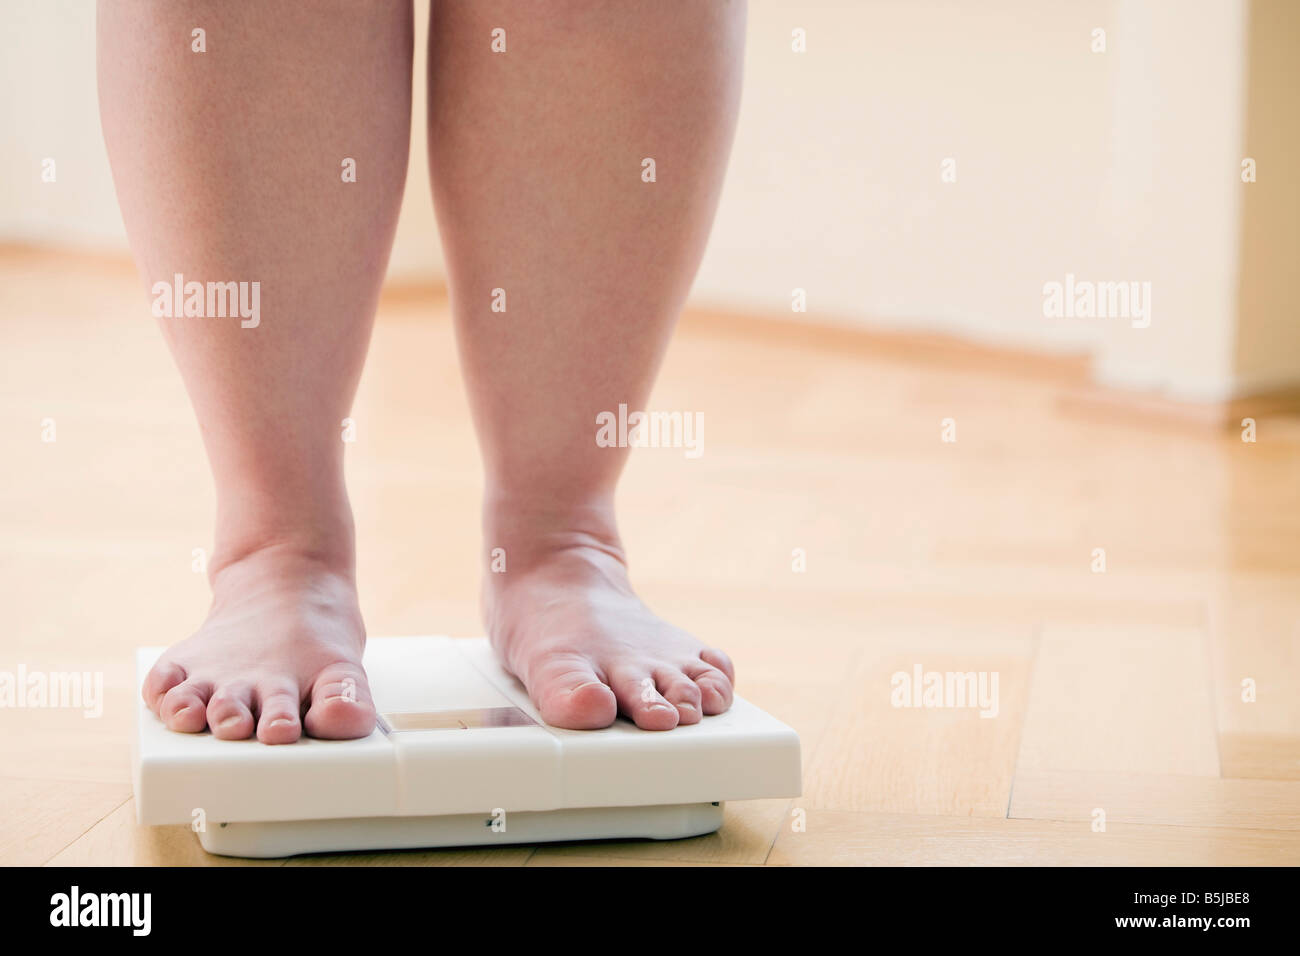 Pies femeninos en la balanza con la medida del peso corporal